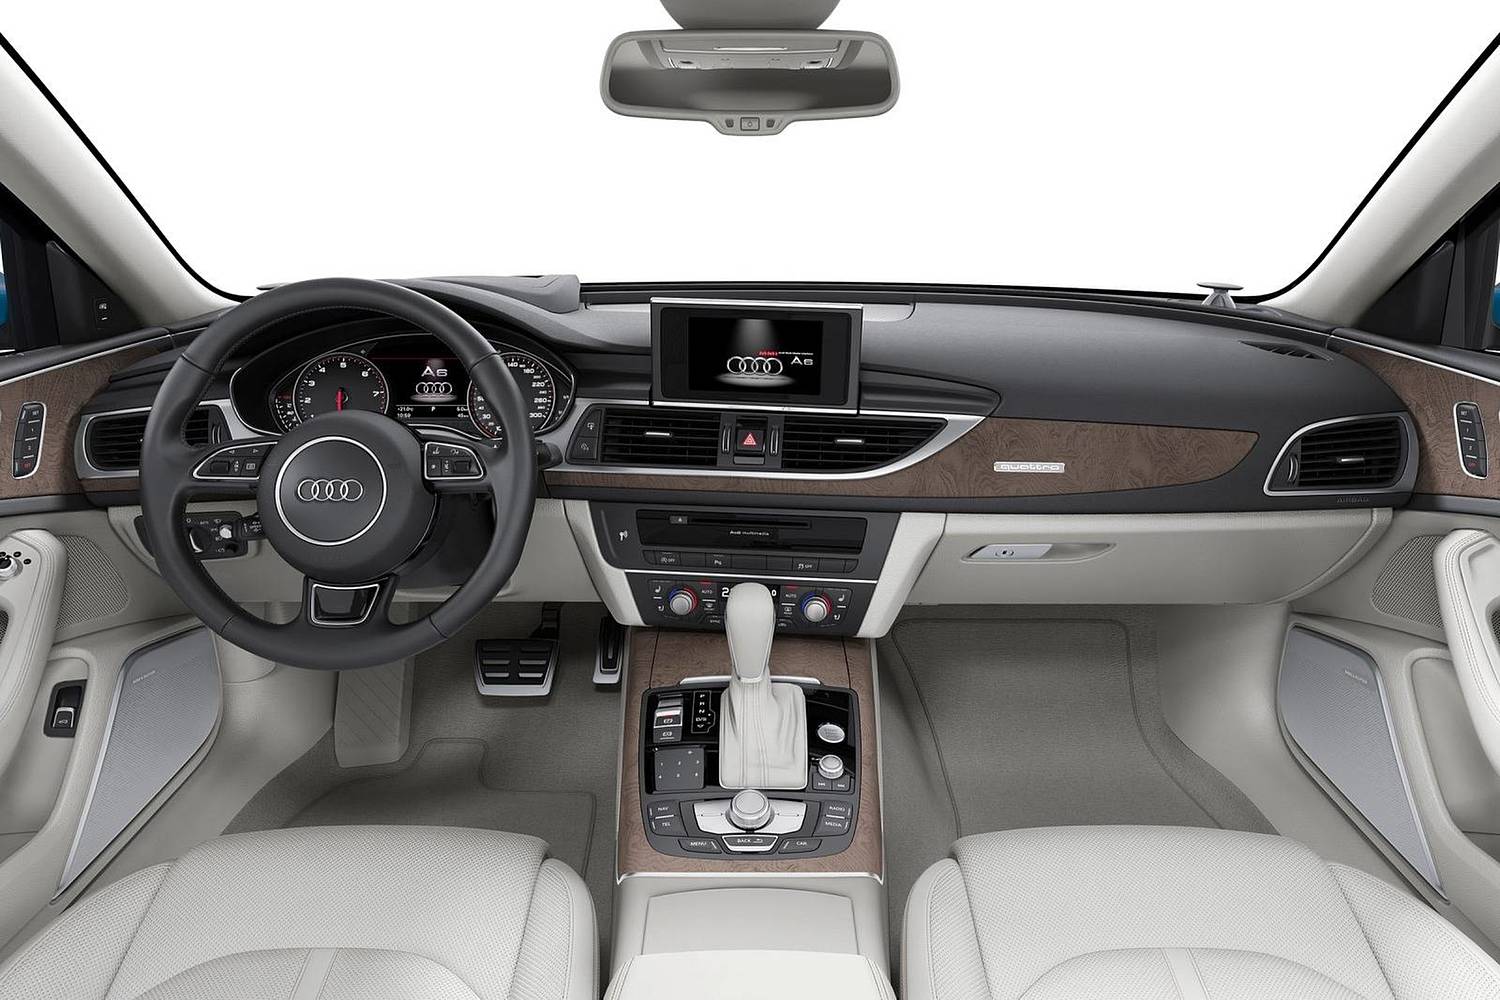 2018 Audi A6 3.0 TFSI Prestige quattro Sedan Dashboard